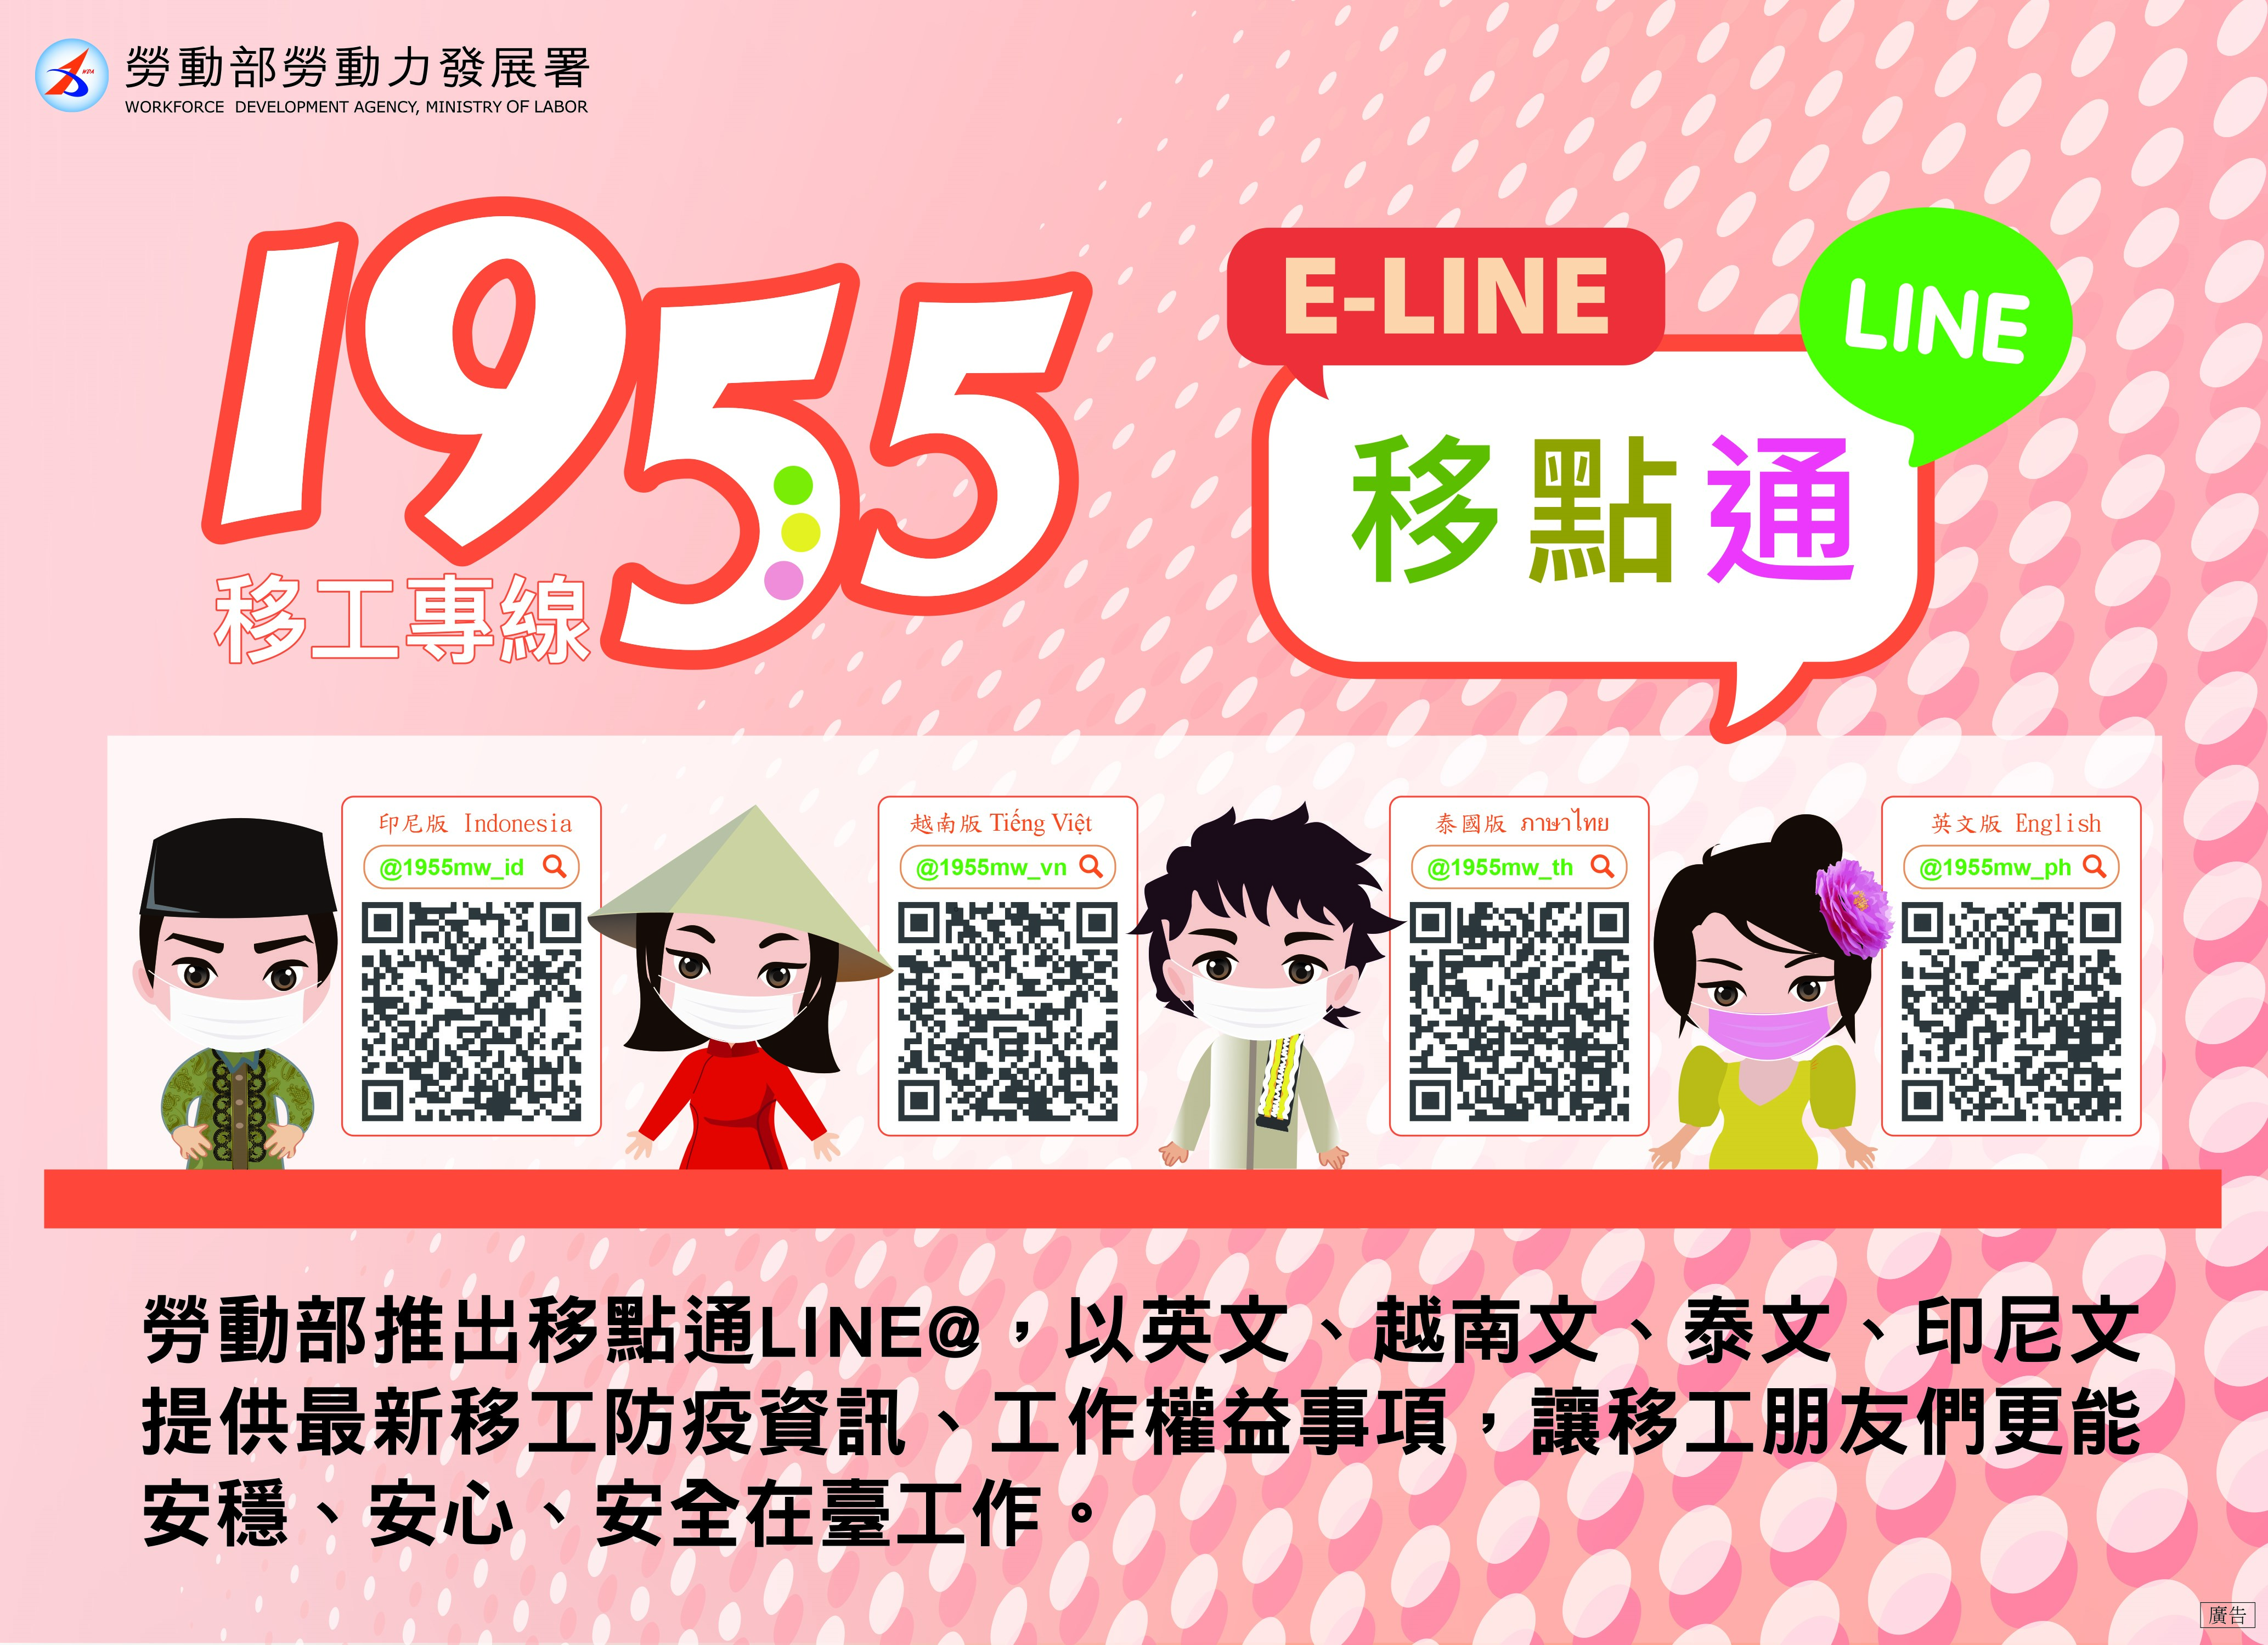 Ứng dụng “Line@E-LINE” đã bất ngờ trở thành một trong những trợ thủ đắc lực trong công tác phòng chống dịch bệnh của Đài Loan. (Nguồn ảnh: Bộ Lao động)